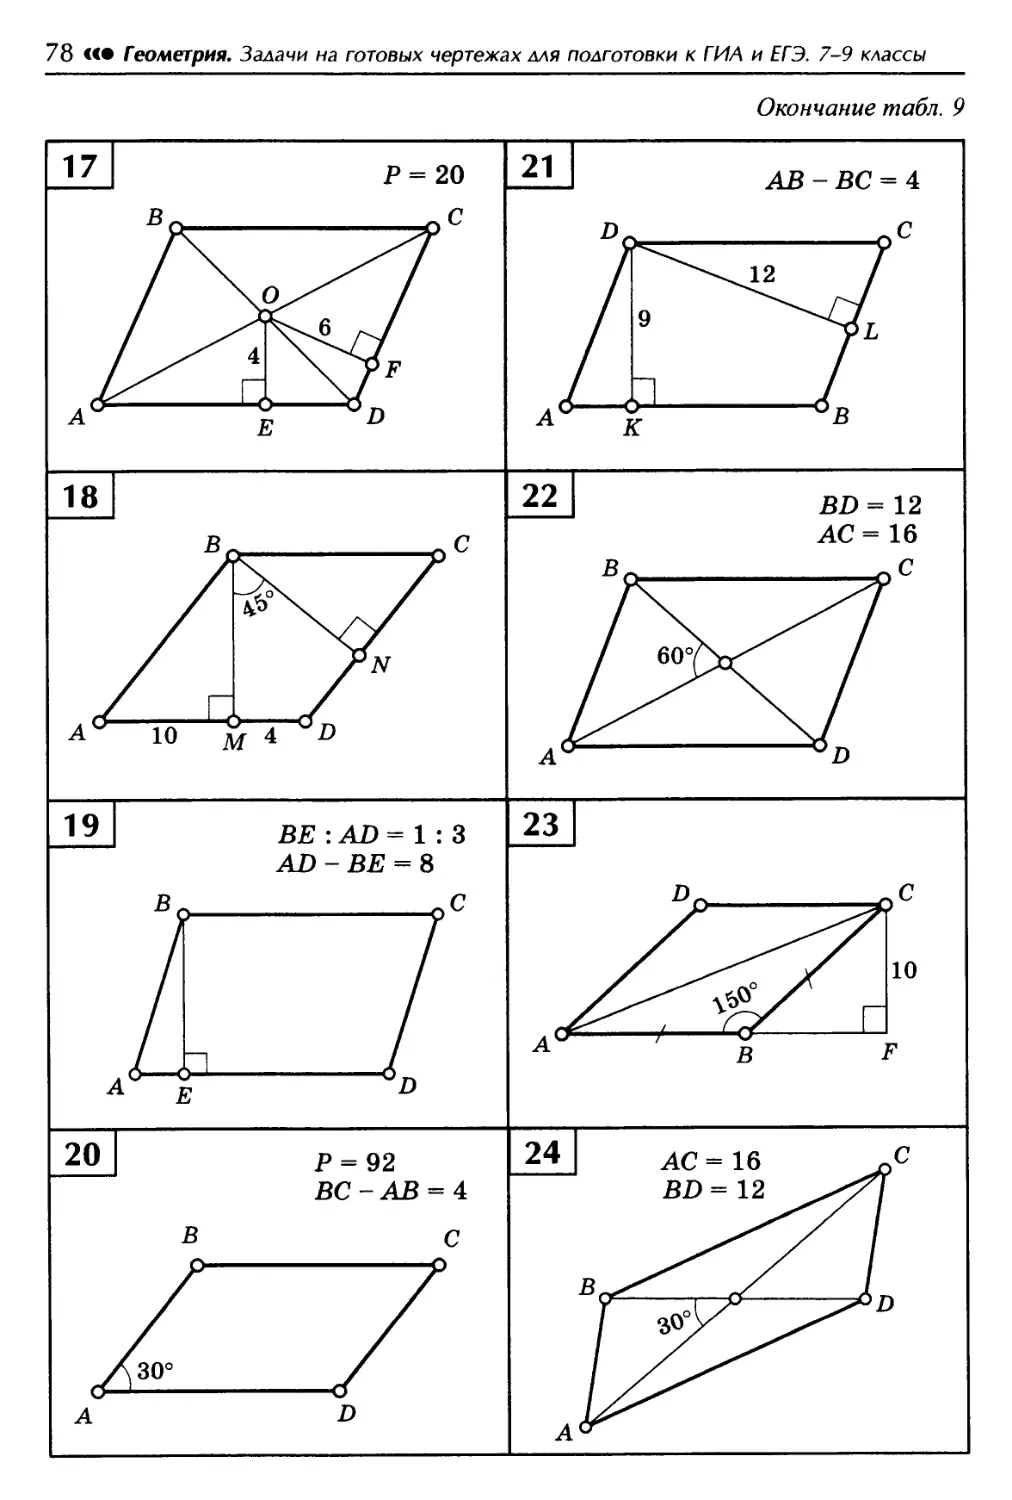 Геометрия на готовых чертежах 7 9. Площадь параллелограмма задачи на готовых чертежах 8 класс. Площадь параллелограмма решение задач на готовых чертежах. Площадь параллелограмма 8 класс геометрия задачи на готовых чертежах. Задачи на готовых чертежах геометрия площадь параллелограмма.